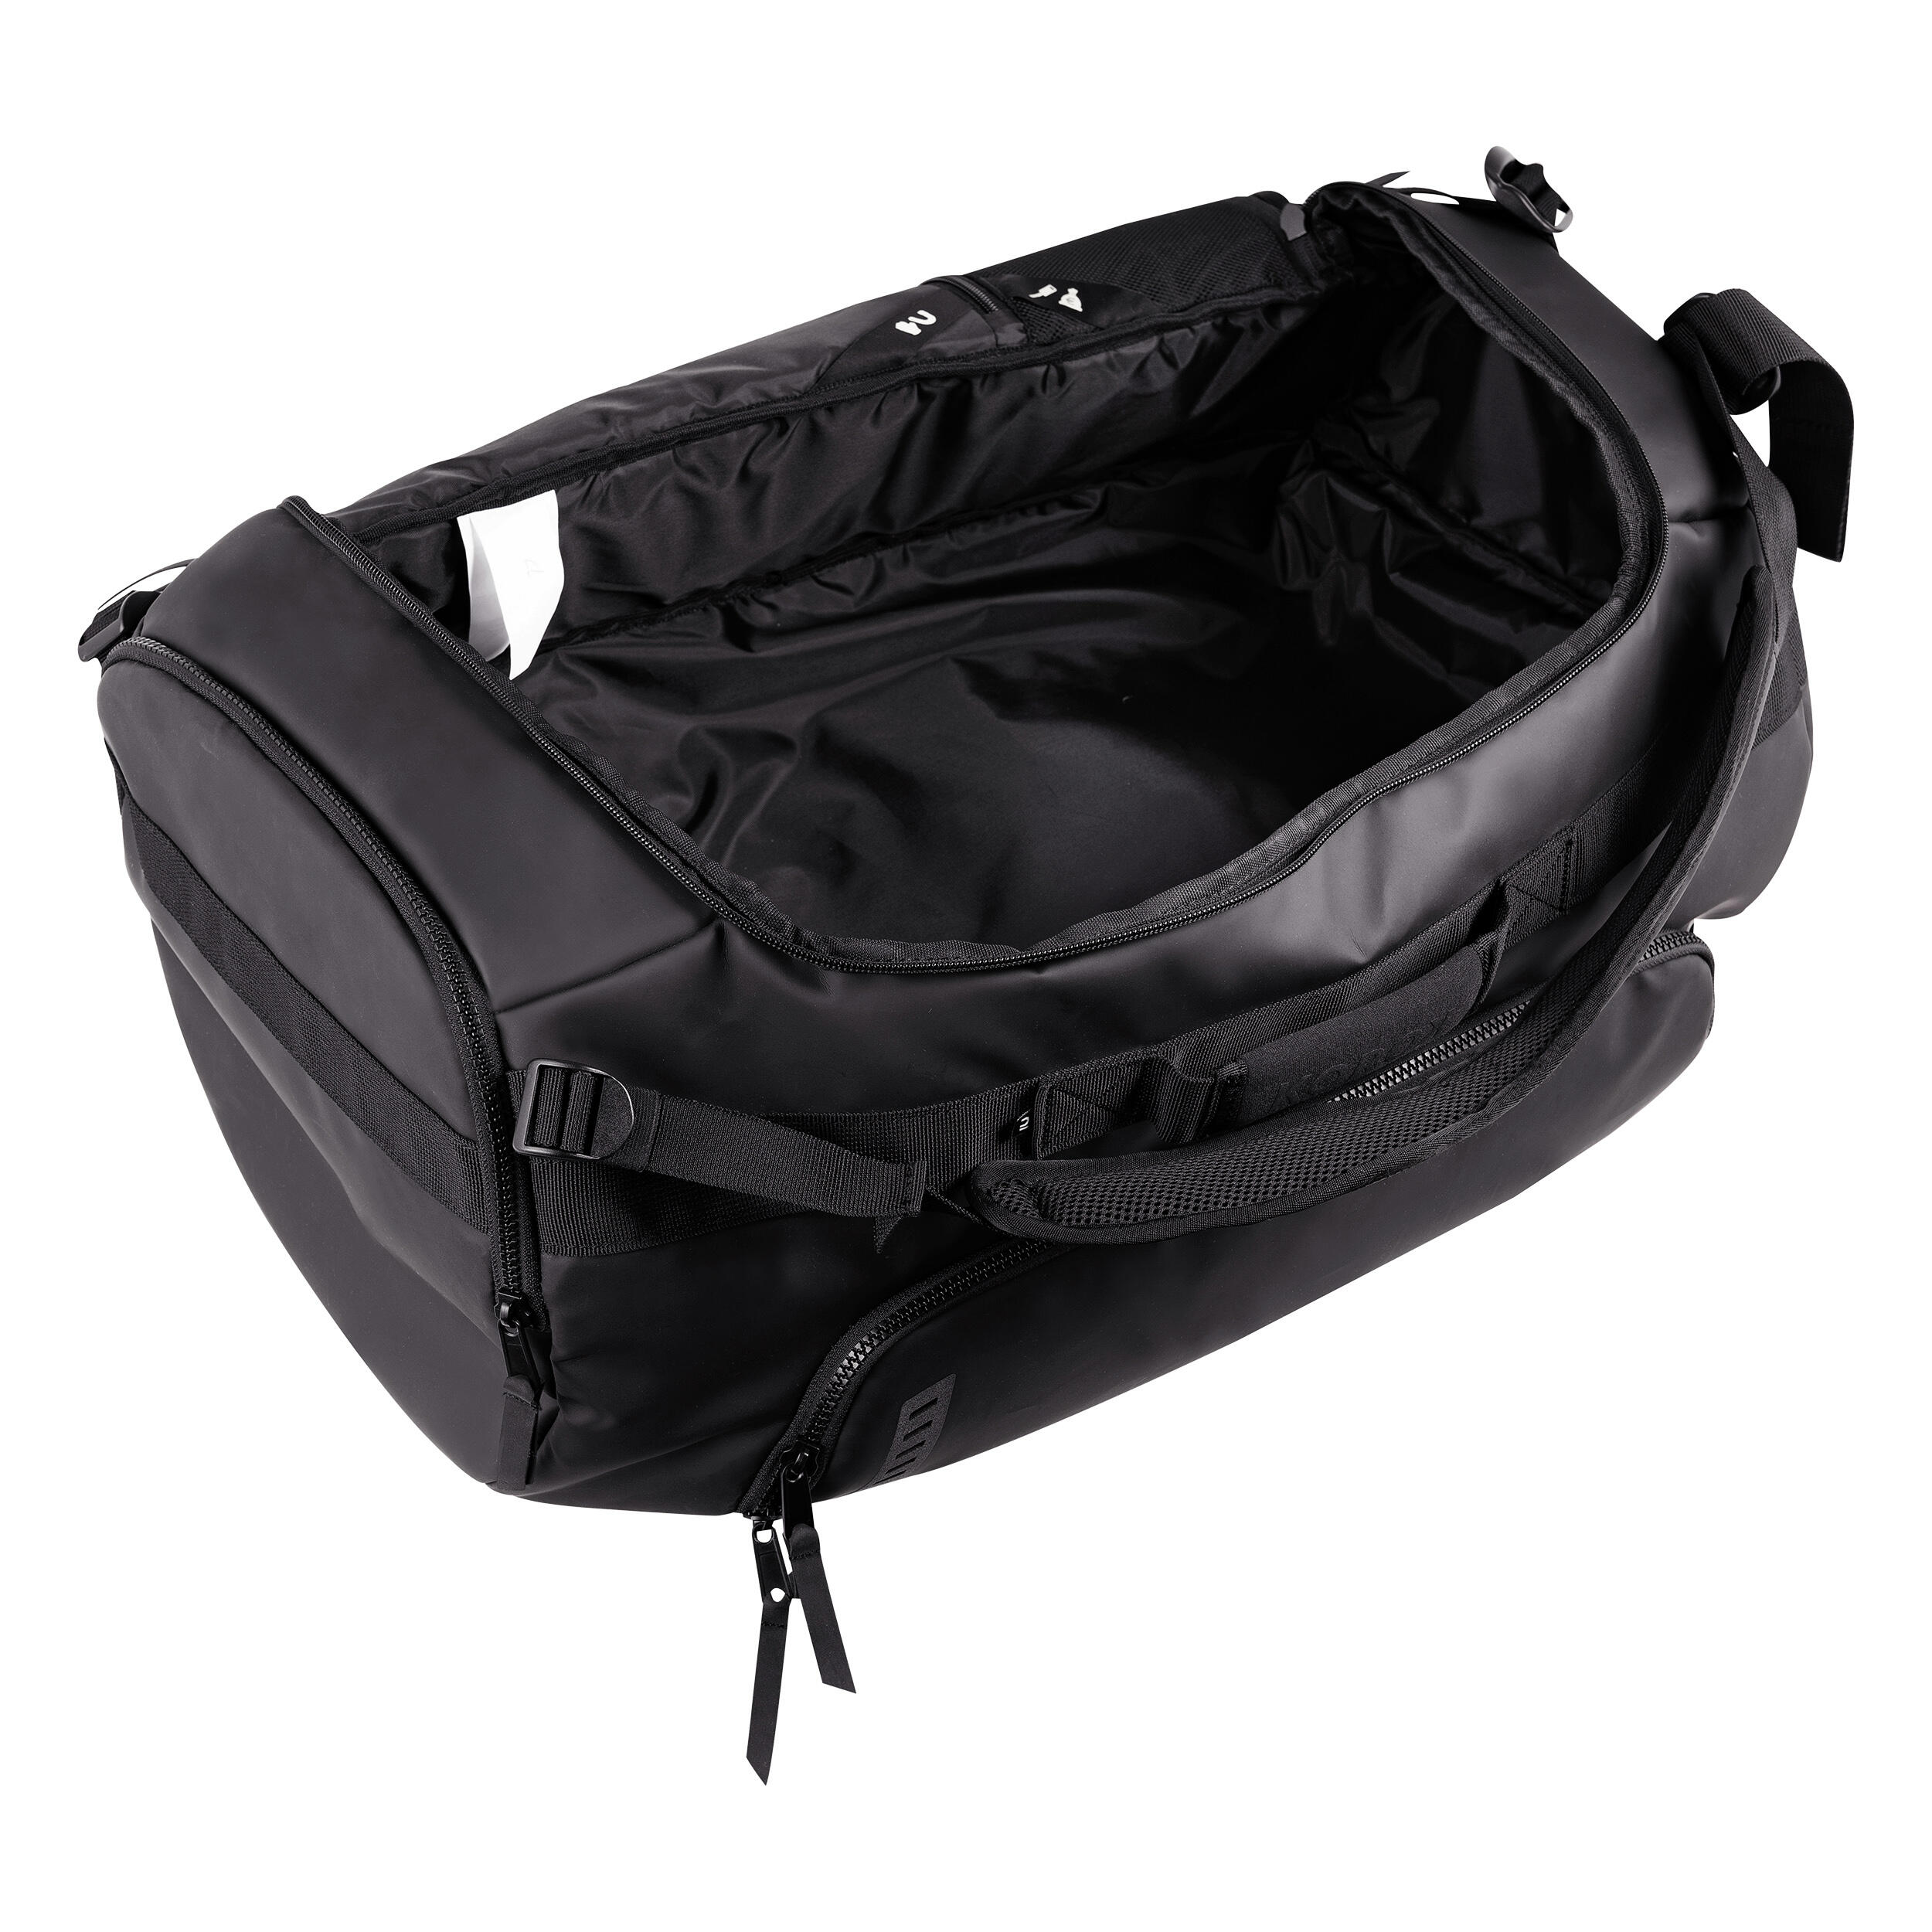 Field Hockey Duffel Bag FH900 - Black 17/25